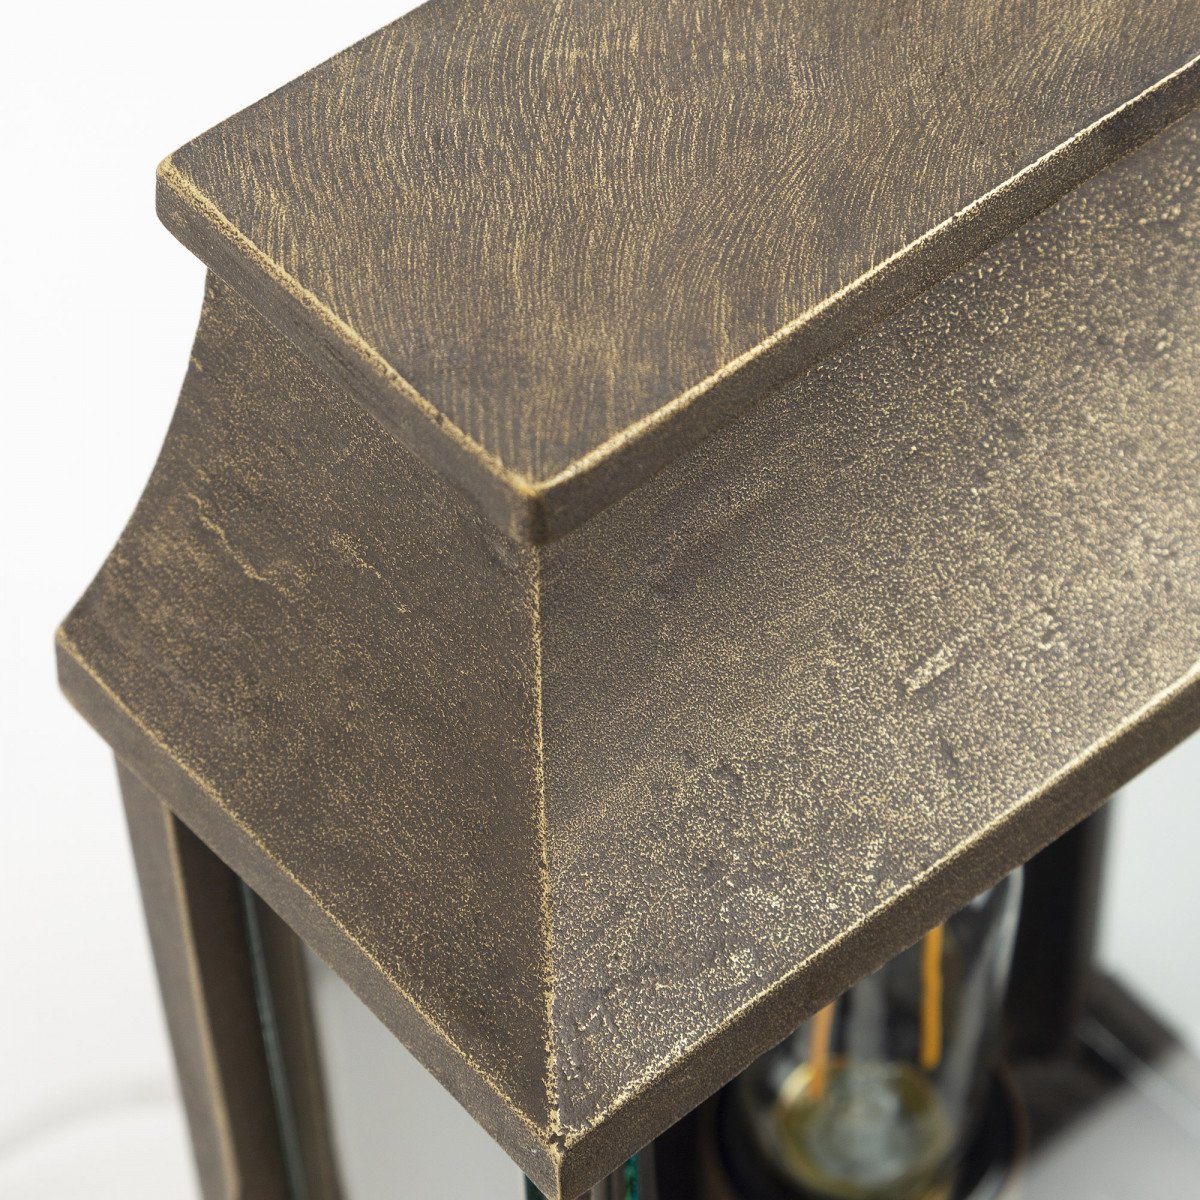 Buitenlamp Goteborg massief brons stijlvol karakteristiek design, een wandlamp met een vlakke achterzijde en heldere beglazing, voorzien van e27 fitting geschikt voor led lichtbronnen, echte KS kwaliteitsverlichting